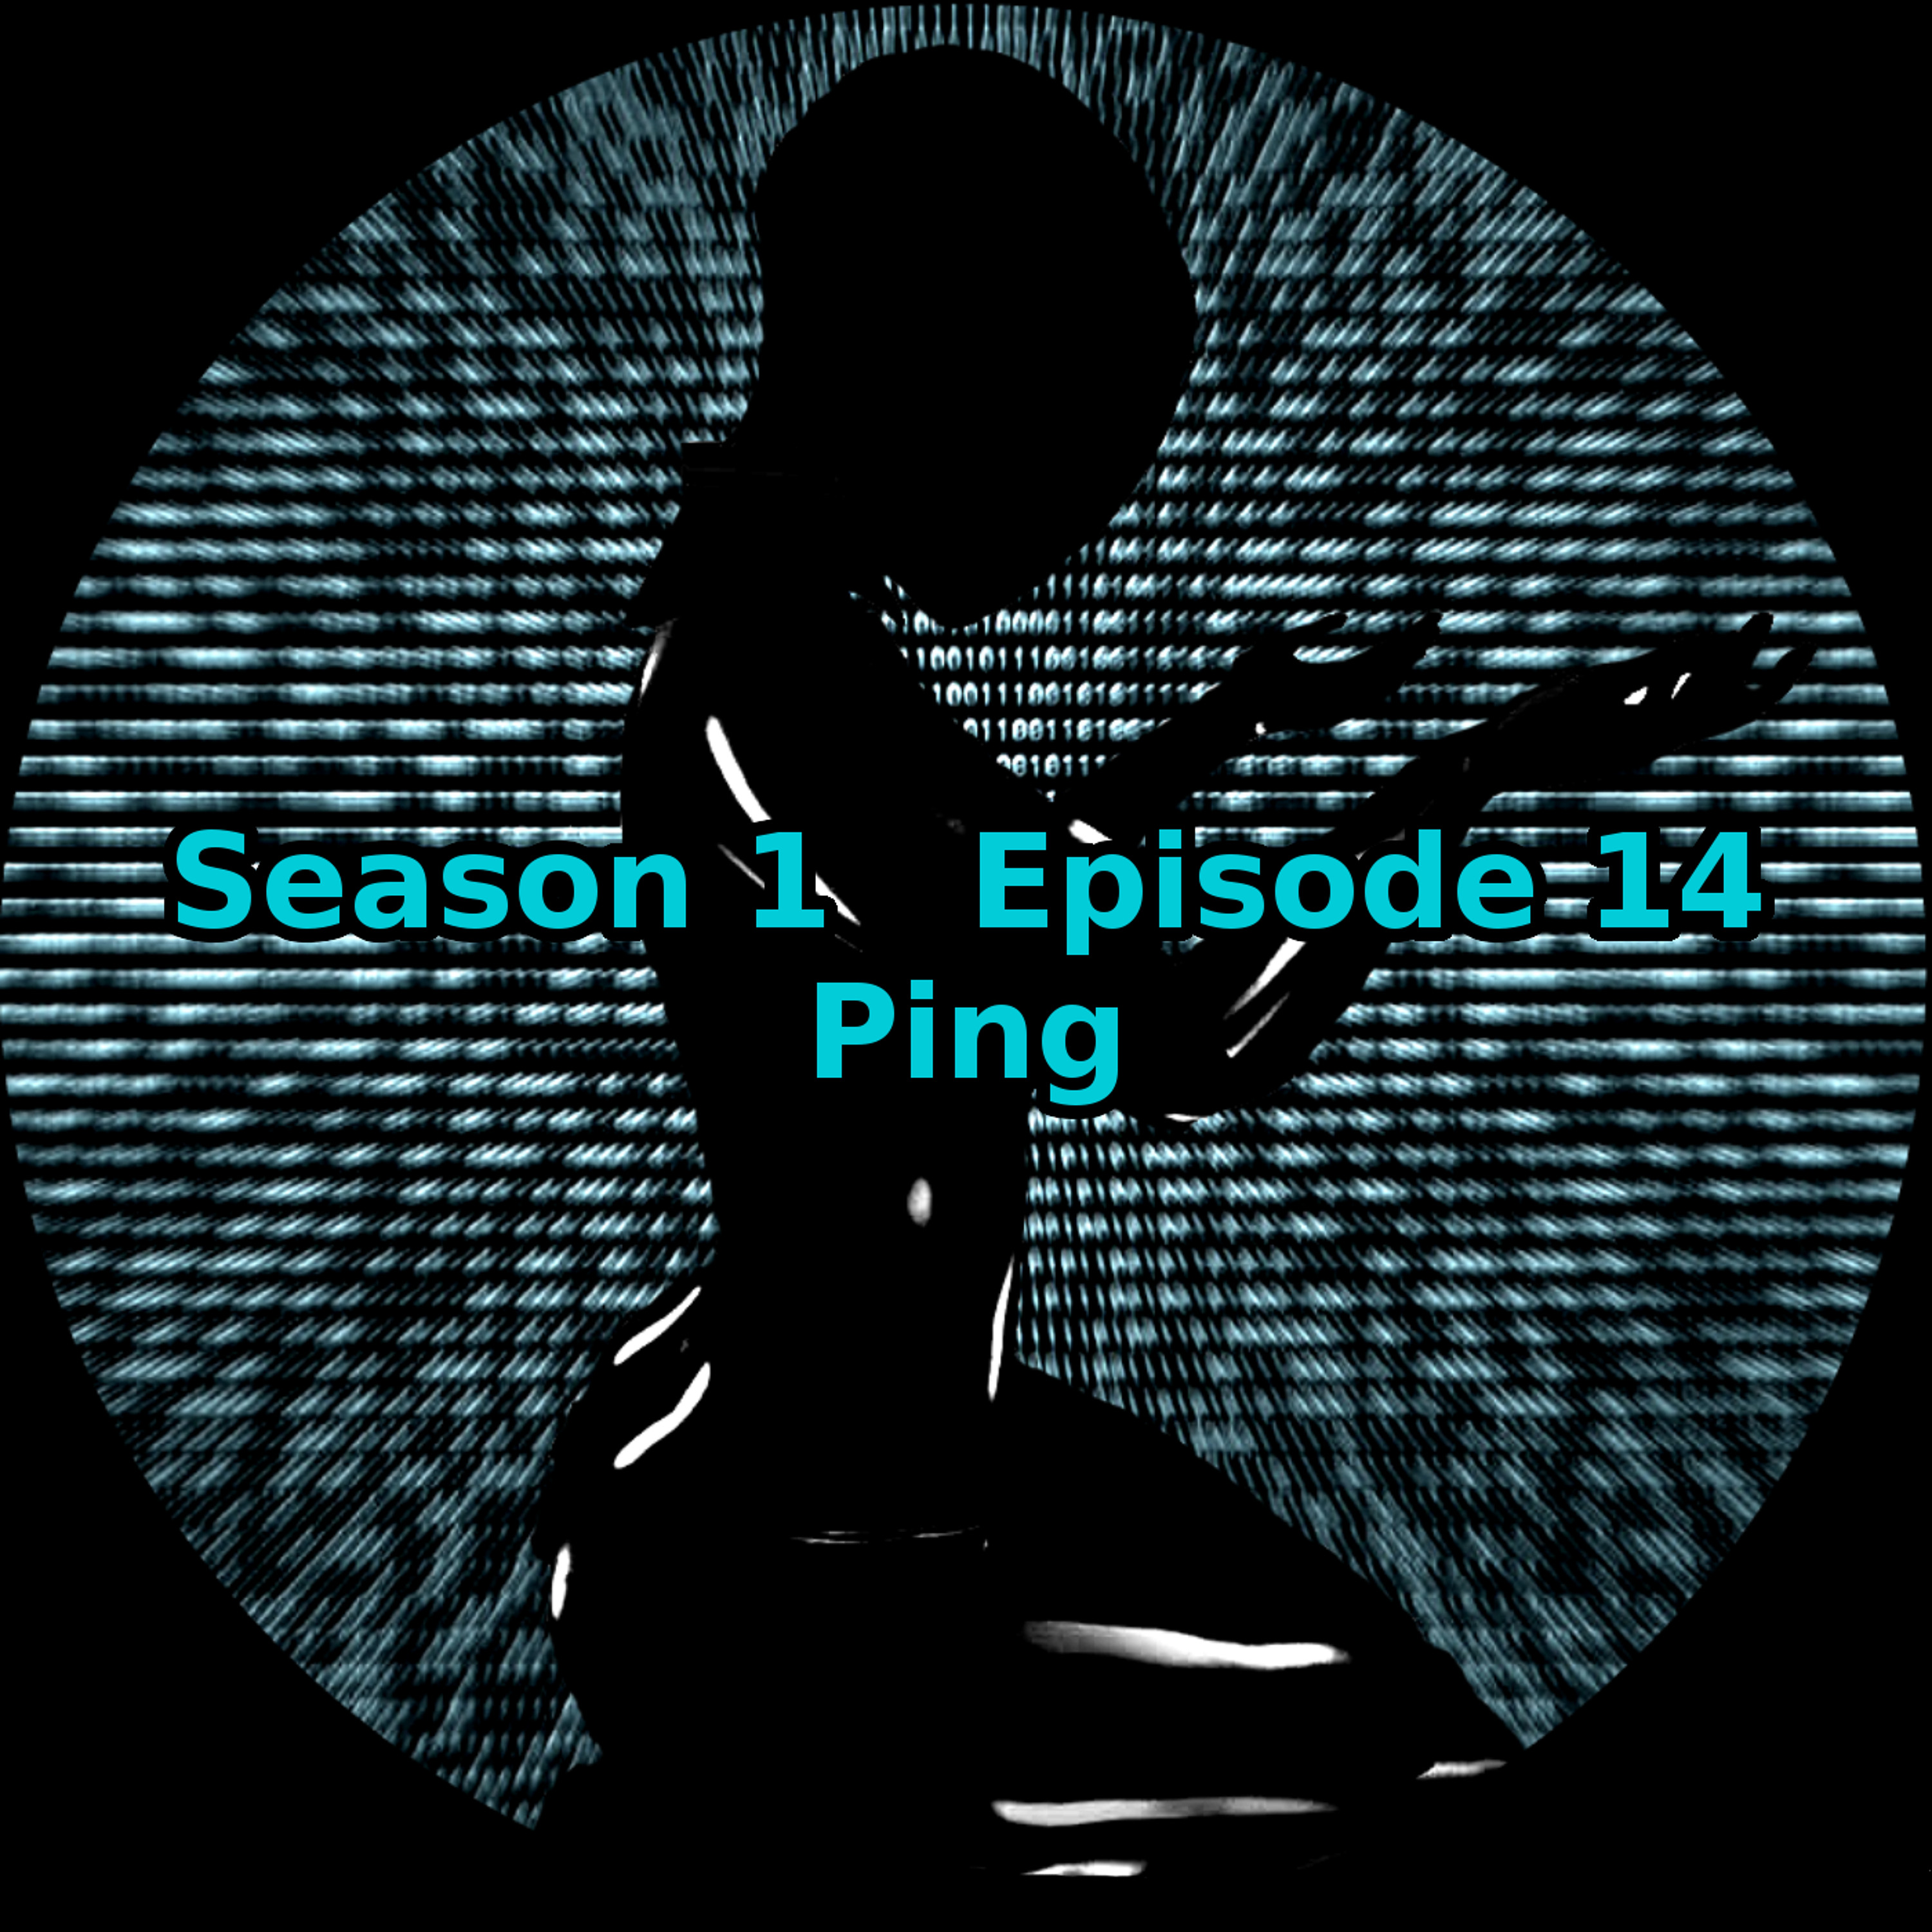 S01 E14 Ping